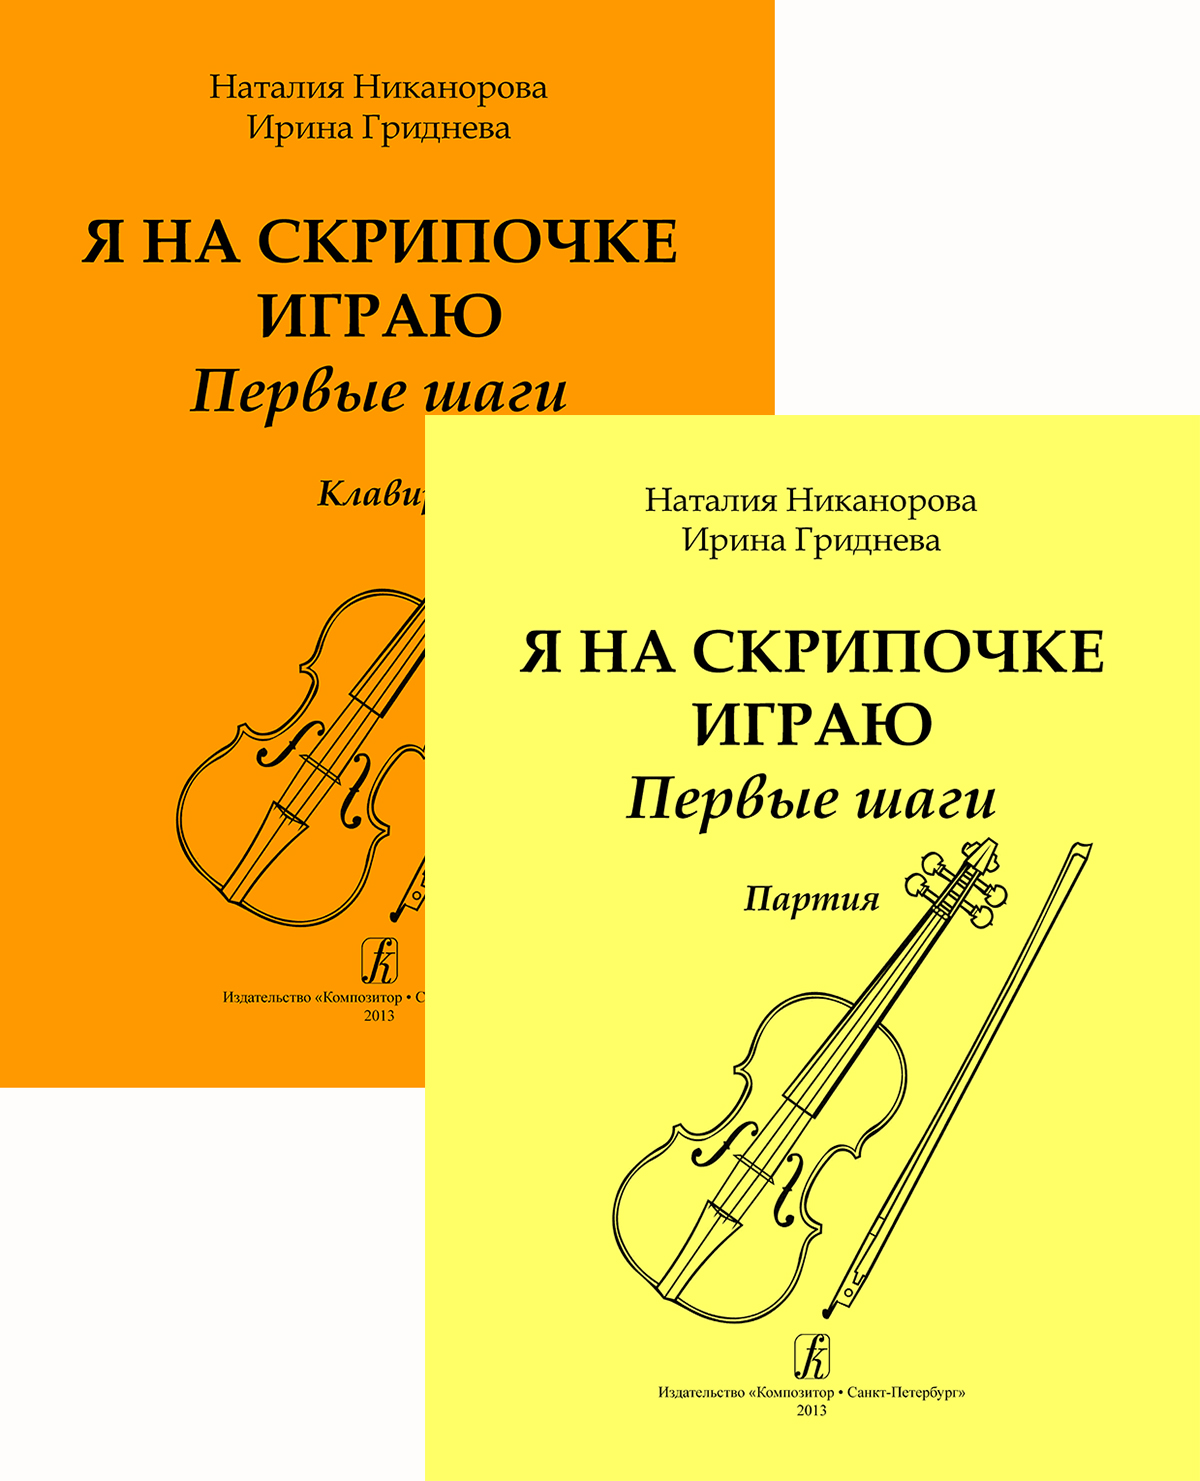 Nikanorova N., Gridneva I. I Do Play the Violin. The First Steps